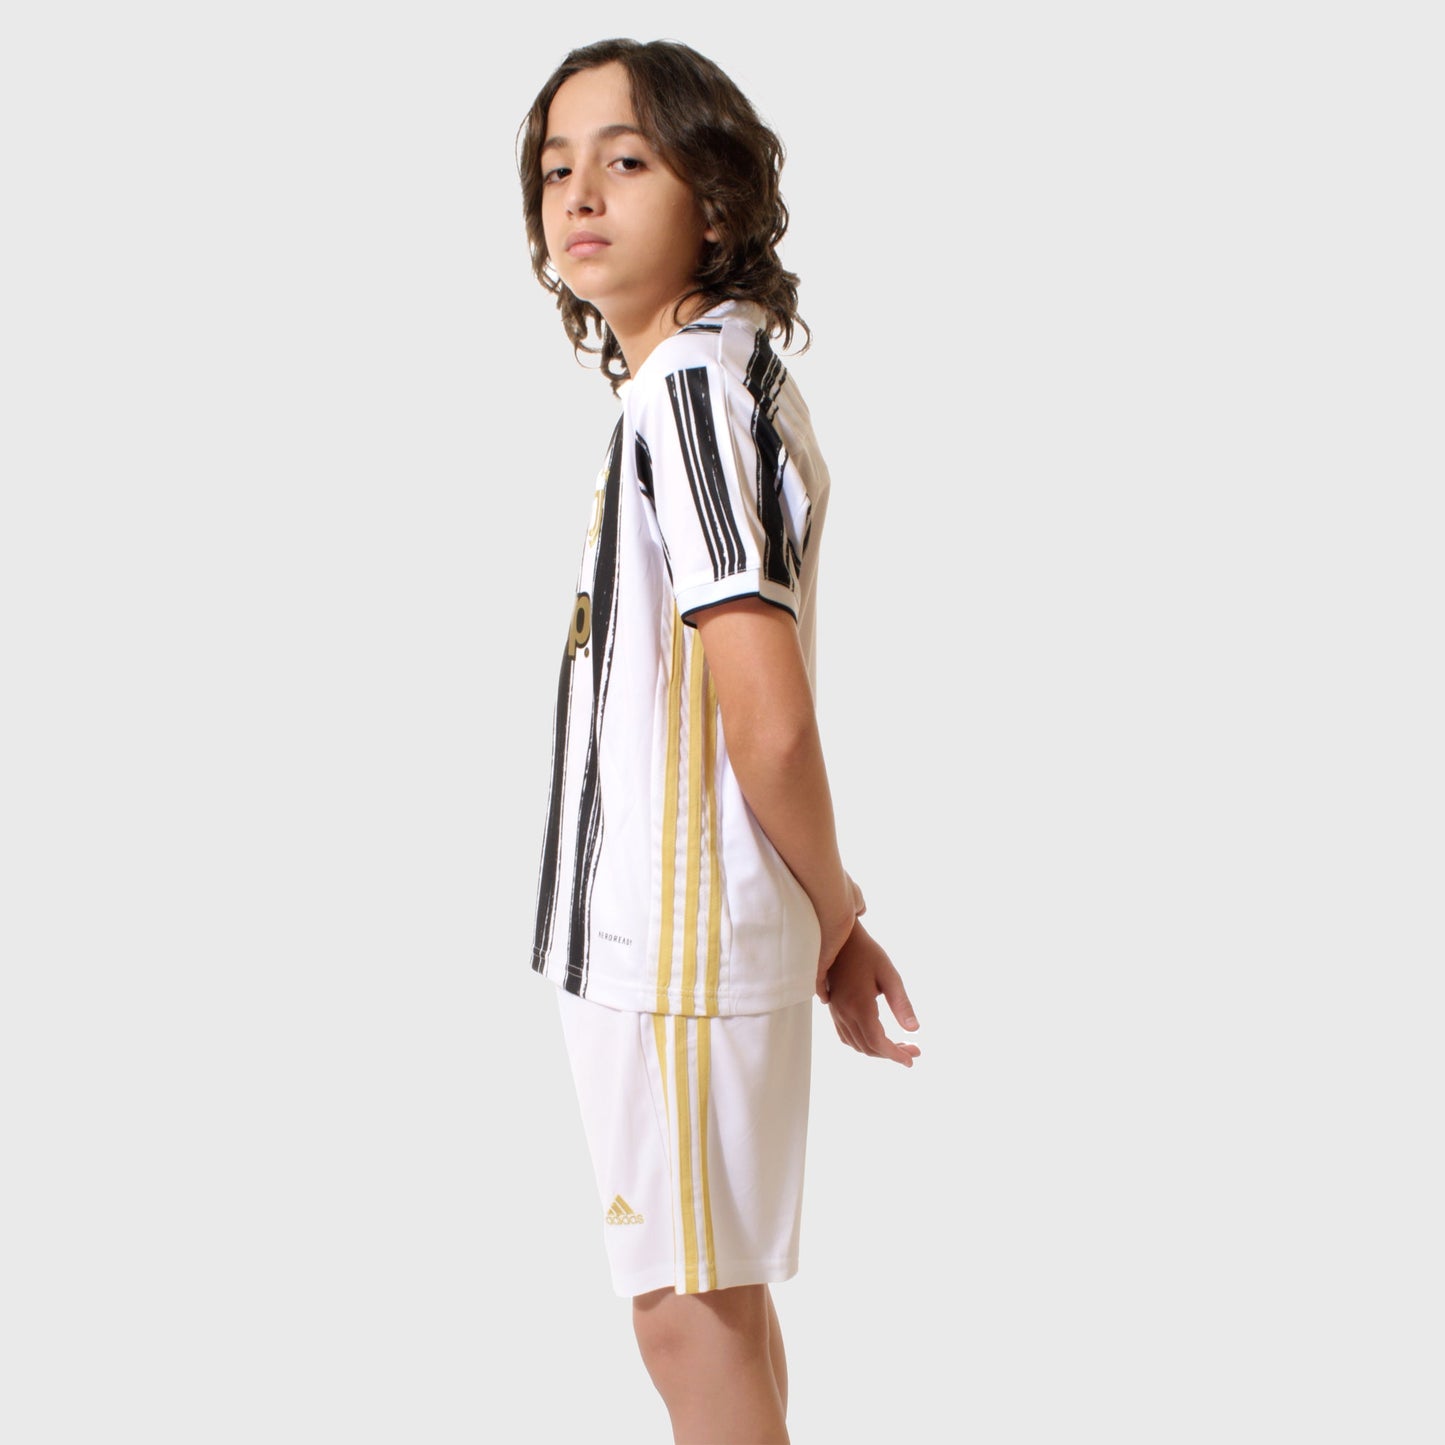 Juventus 20/21 Kids Home Kit